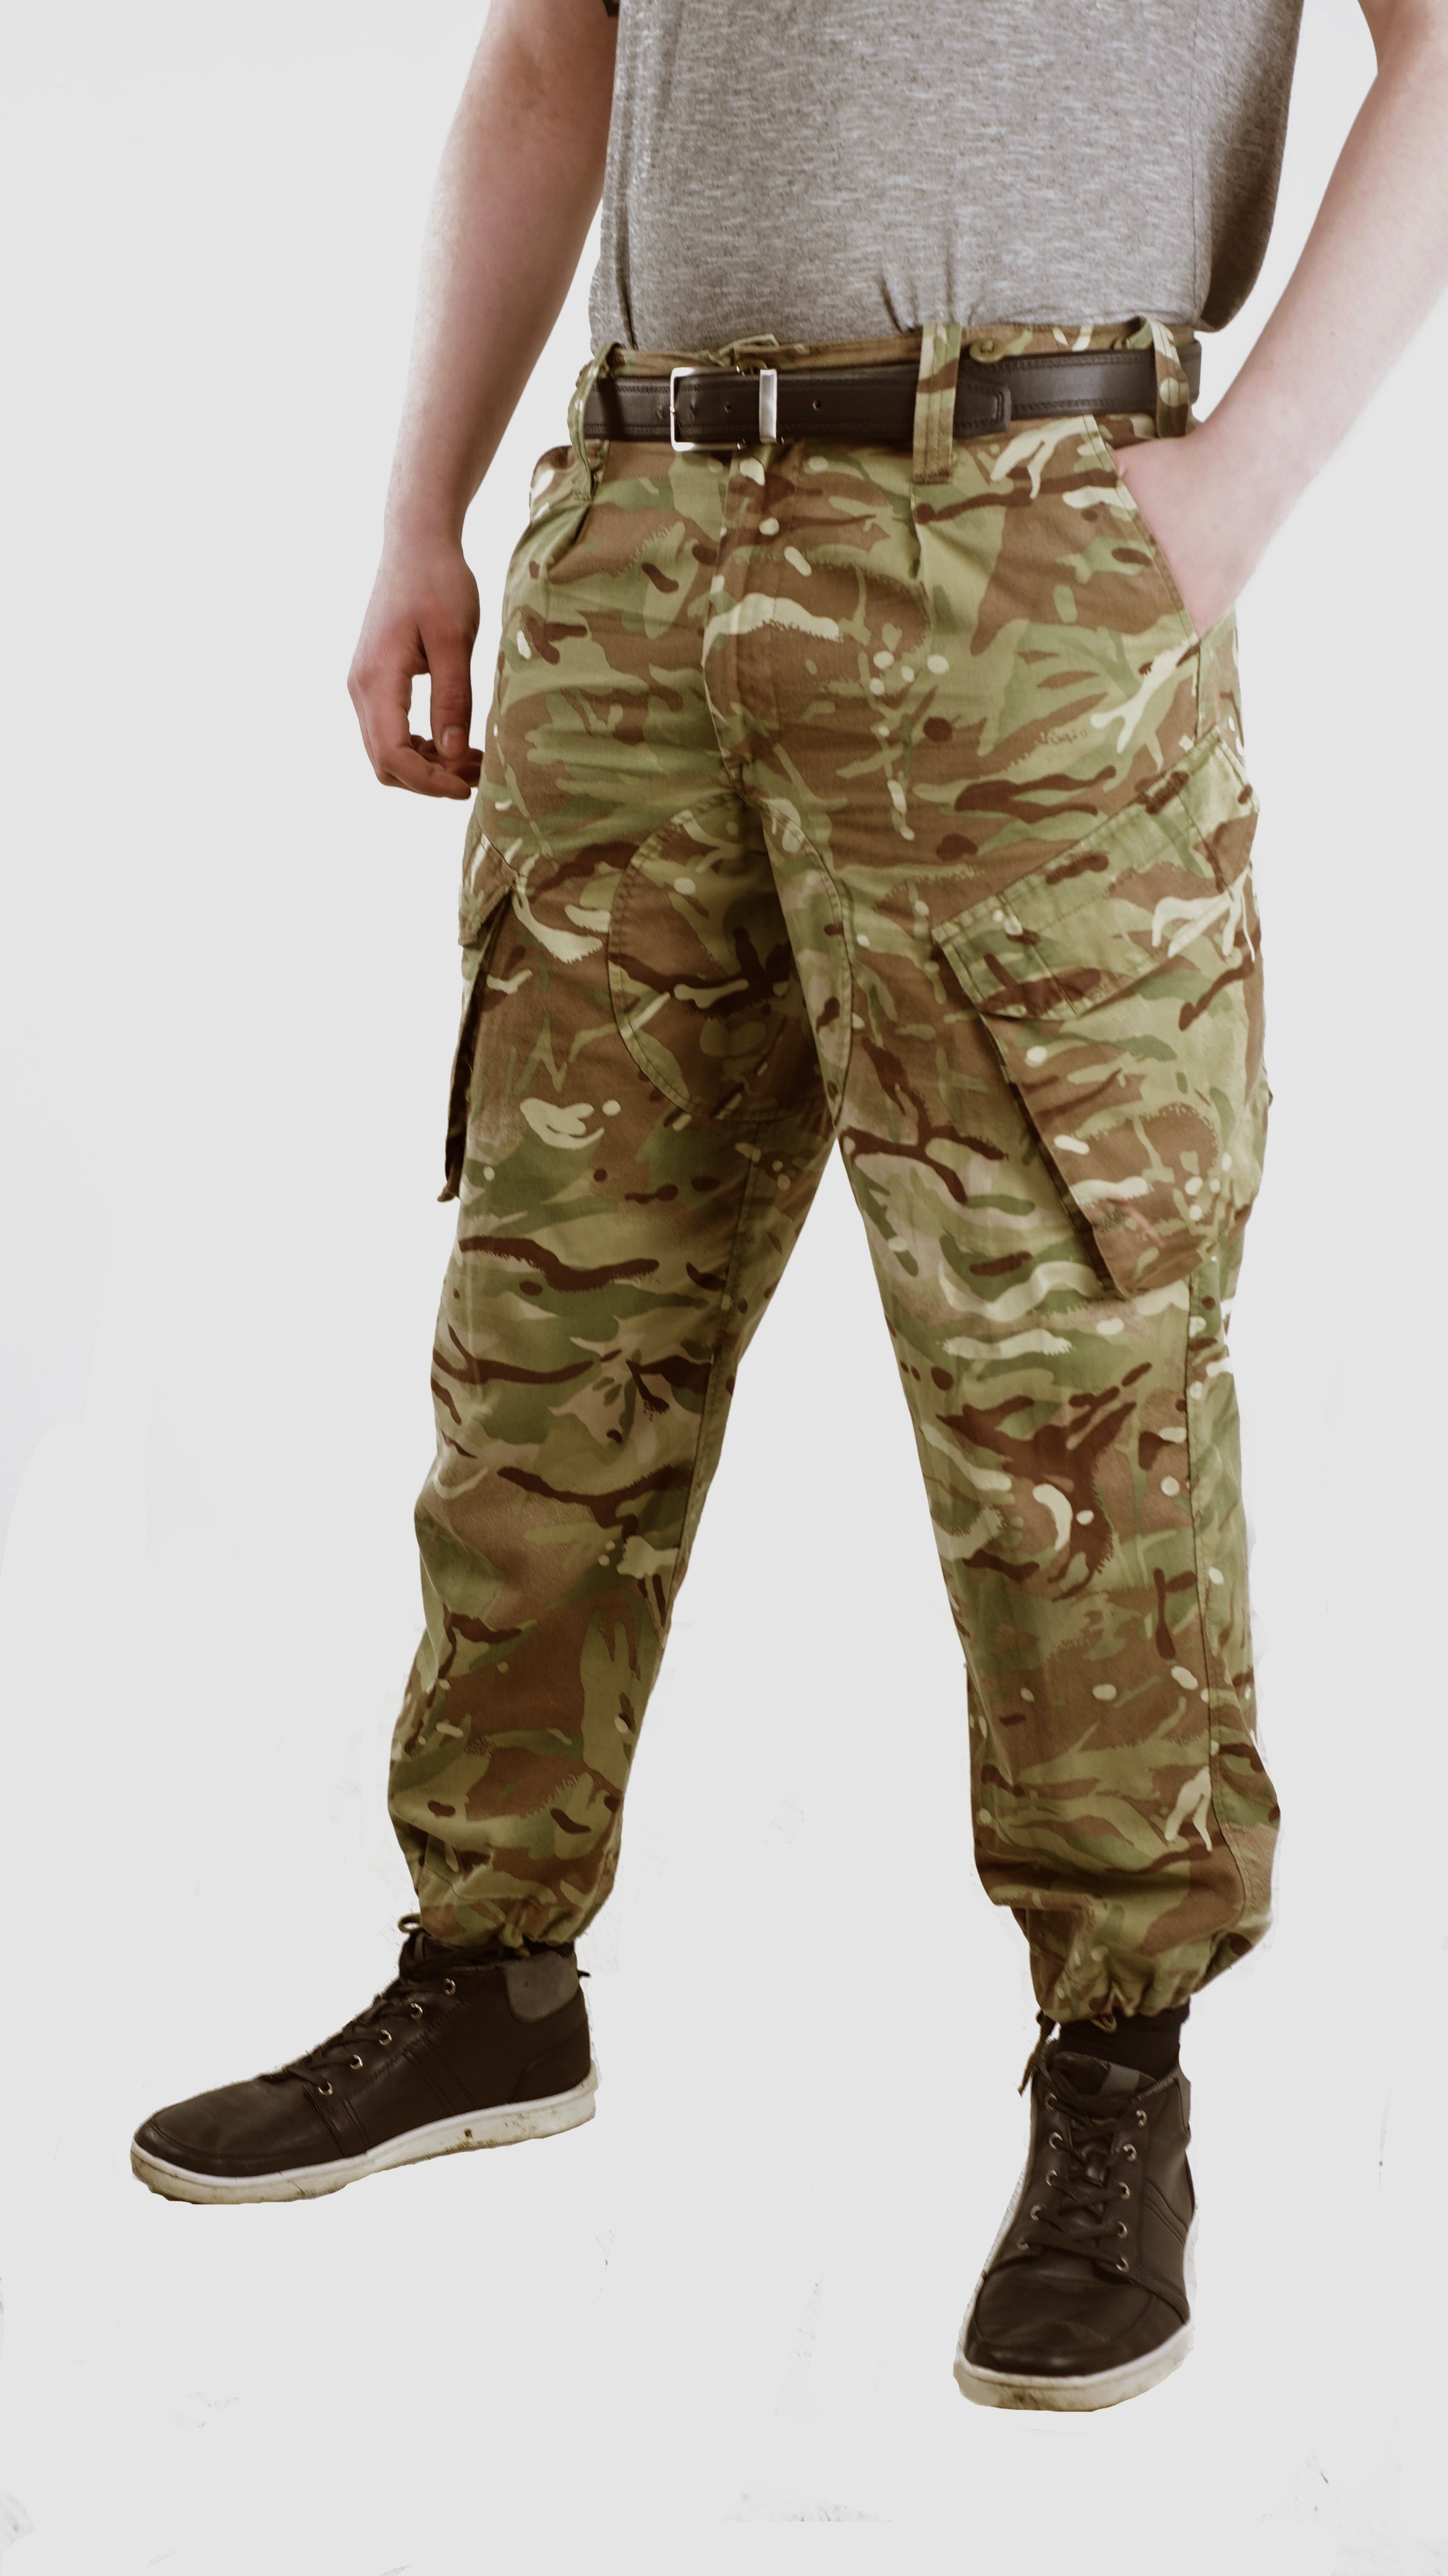 British Army MTP Clothing  Jacket  Shirt  Trousers  YouTube